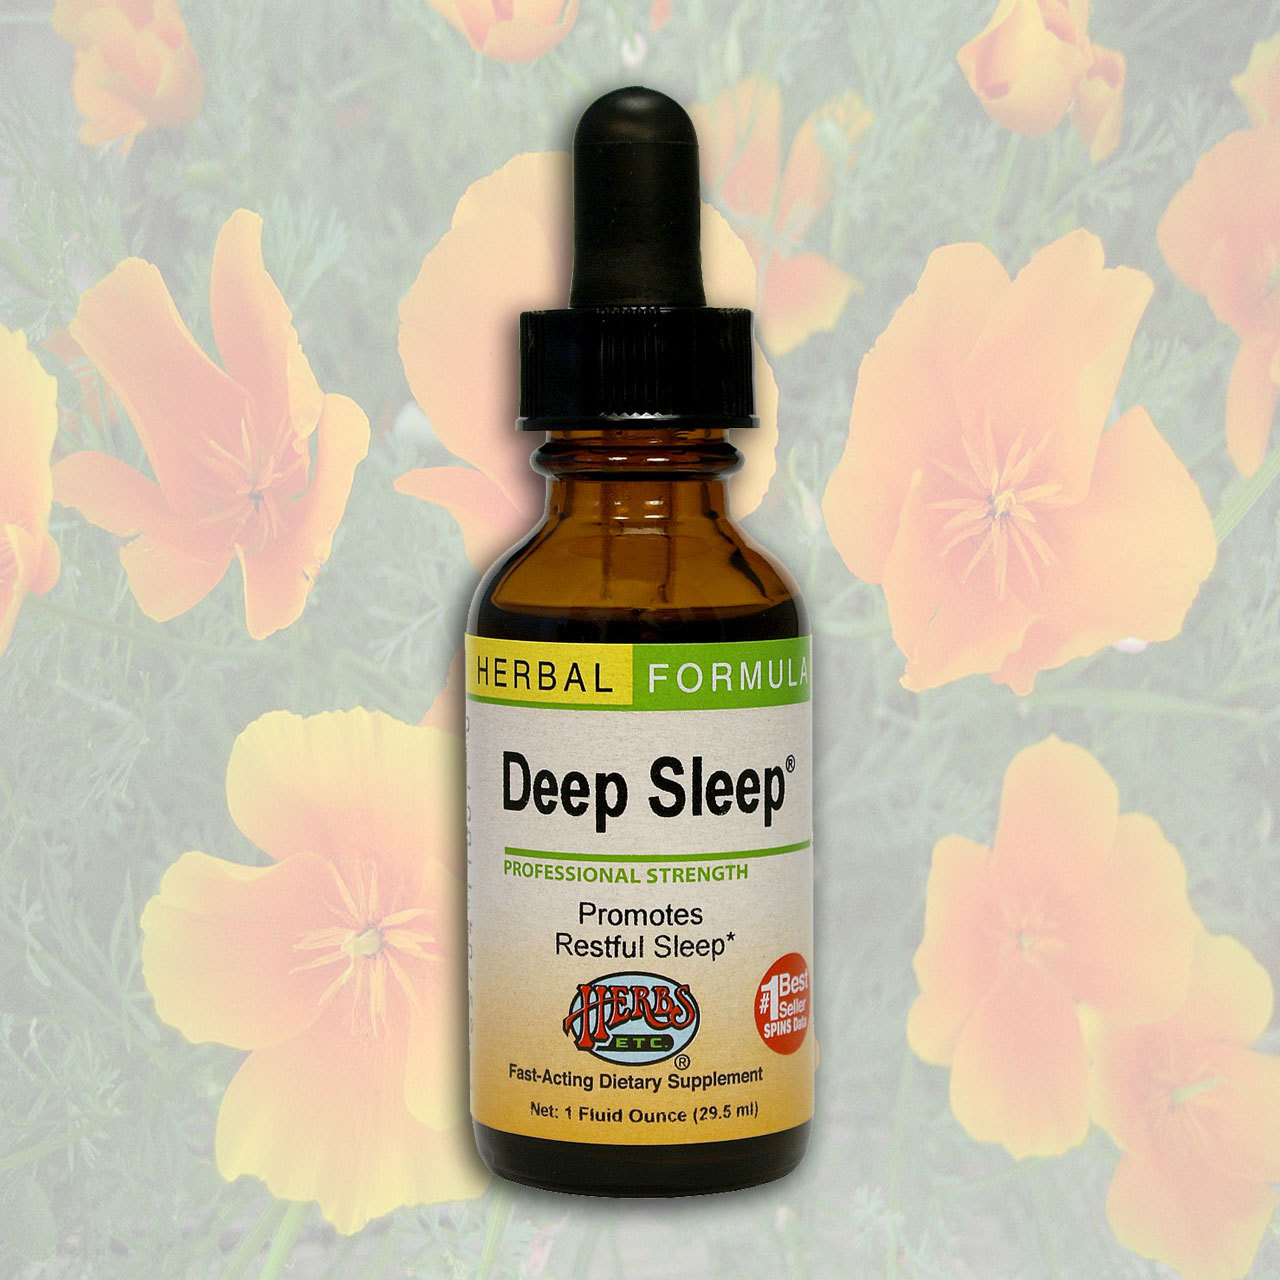 Hersb Eetc Liquid Formula - Deep Sleep